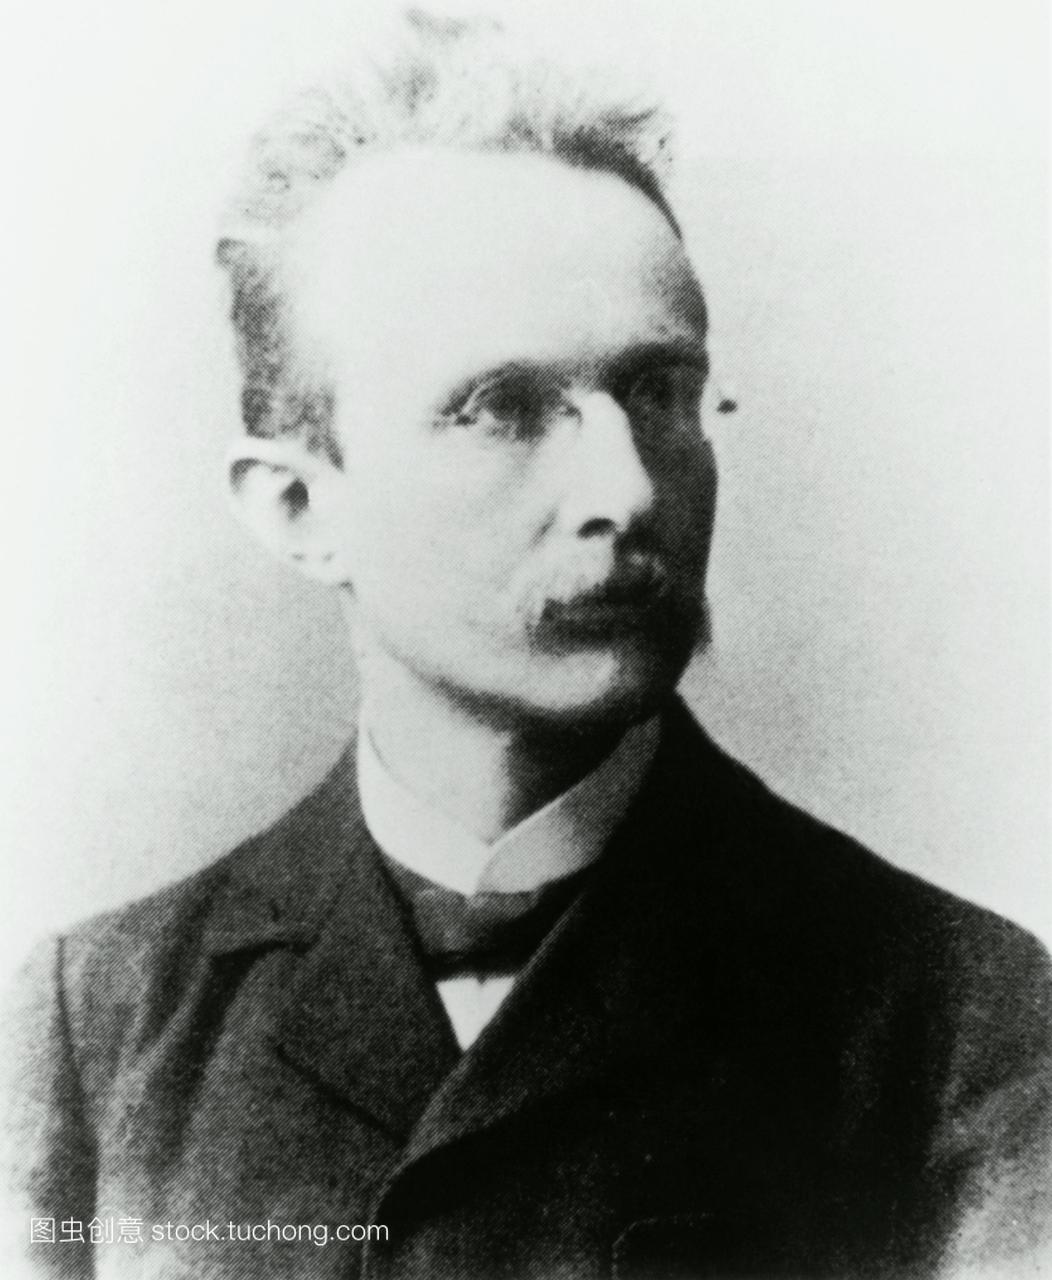 马克斯·普朗克1858-1947,德国物理学家,诺贝